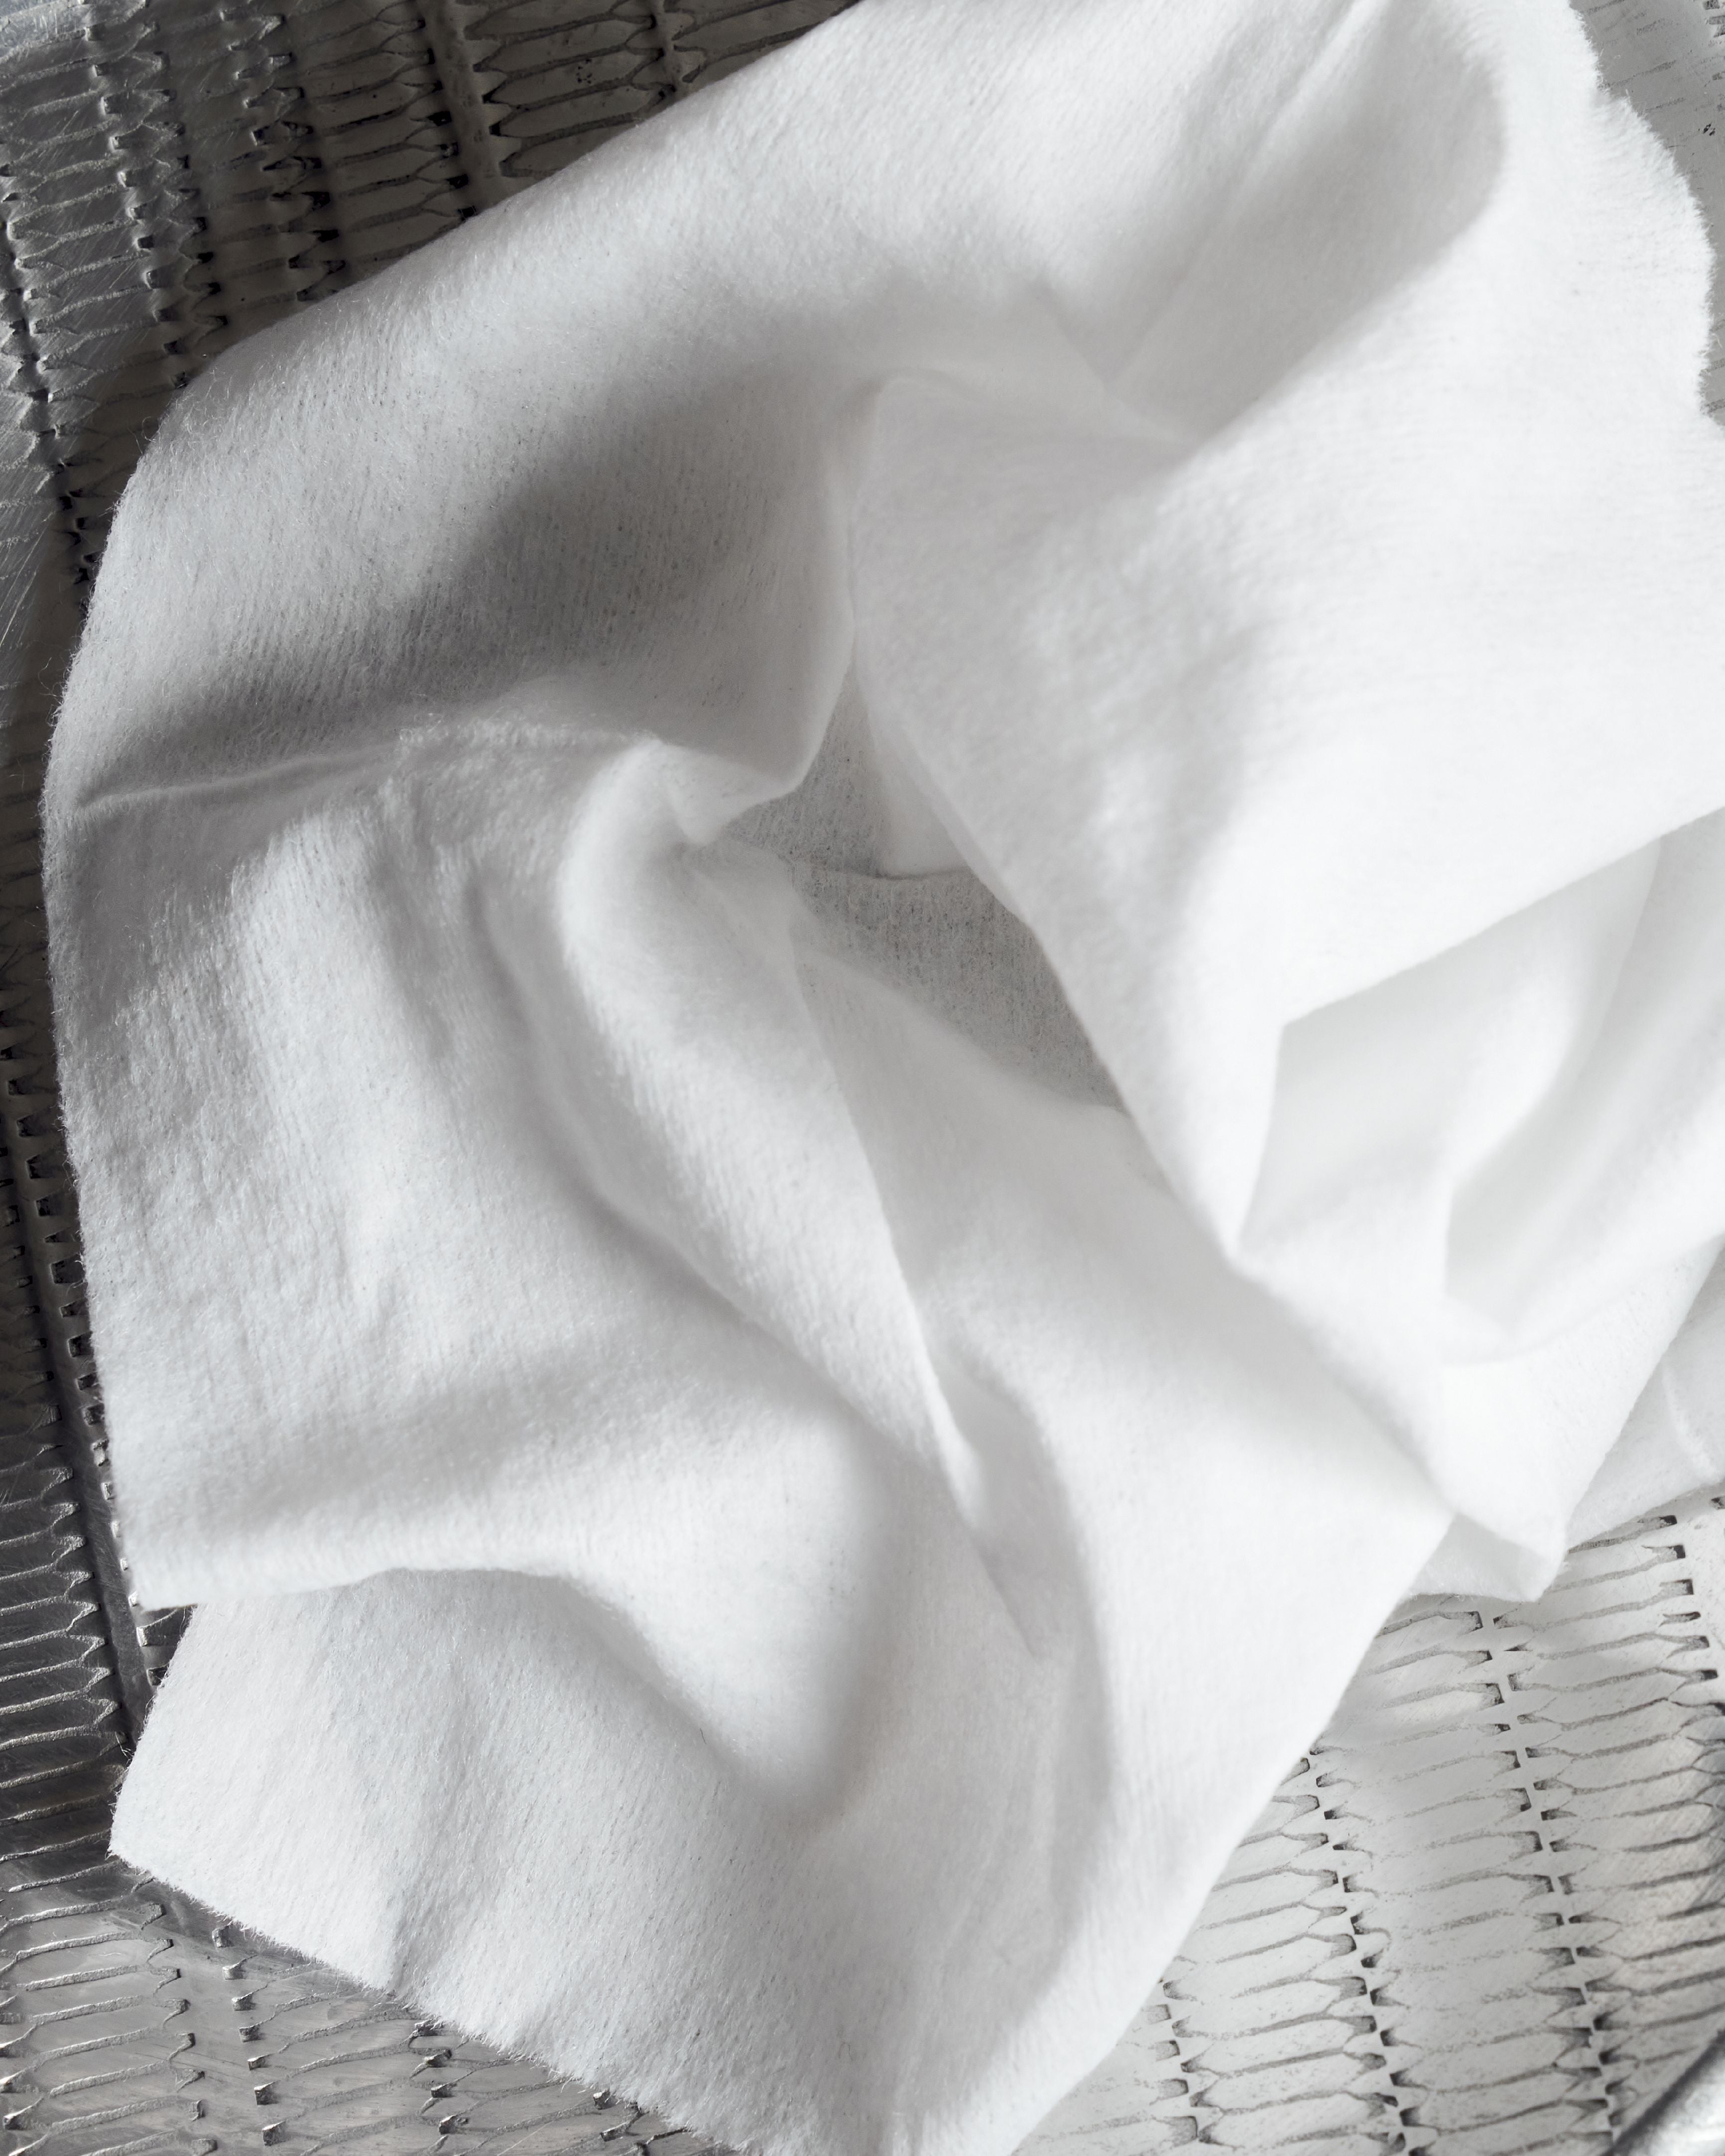 Meraki limpieza toallitas aloe vera 20 pcs., Marrón/blanco